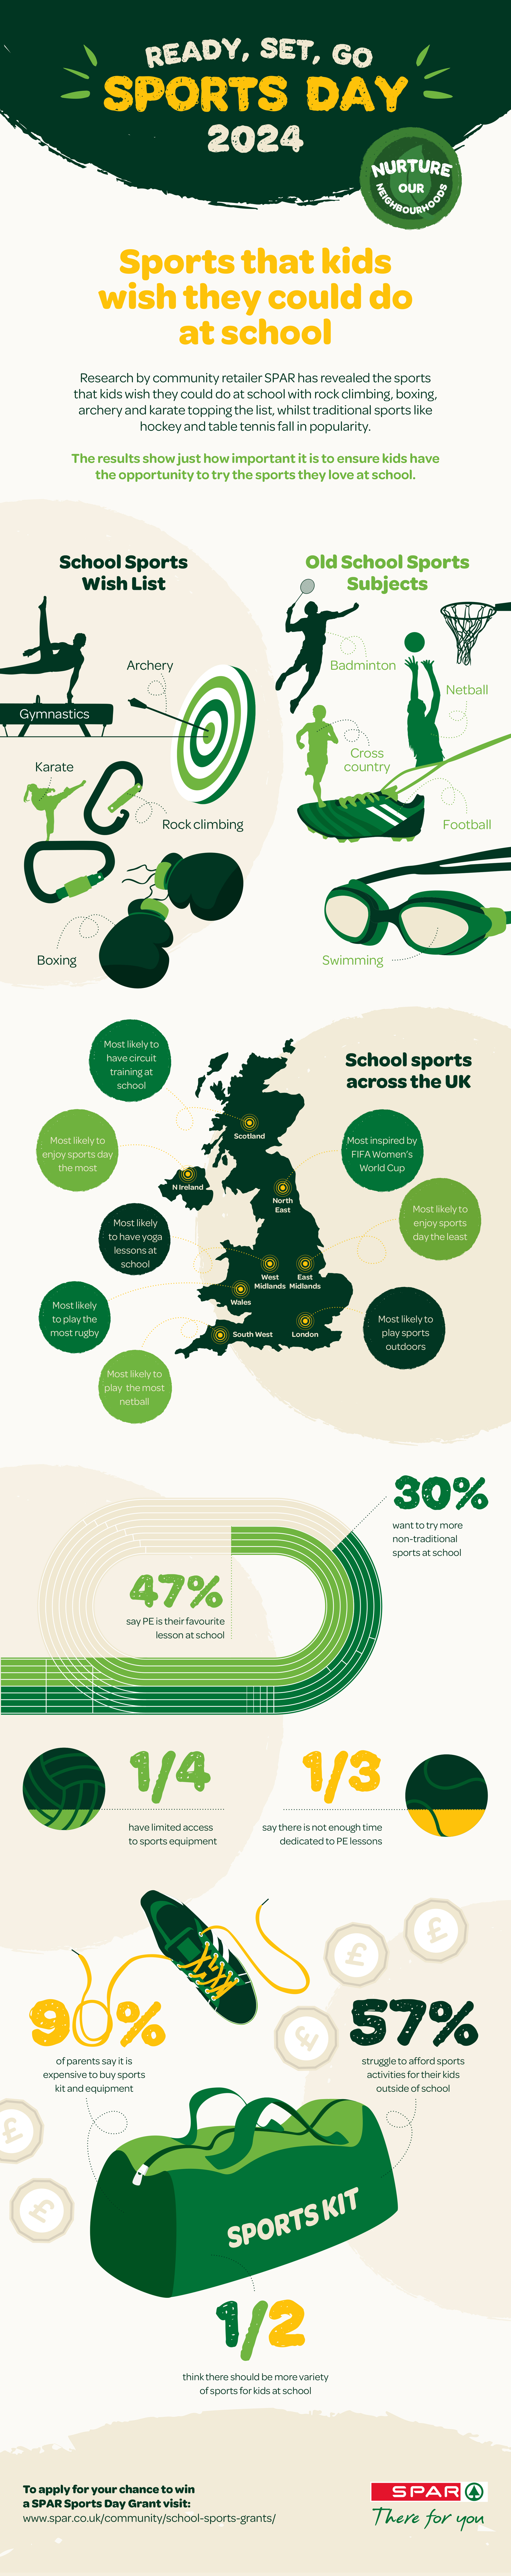 SPAR Sports Day stats